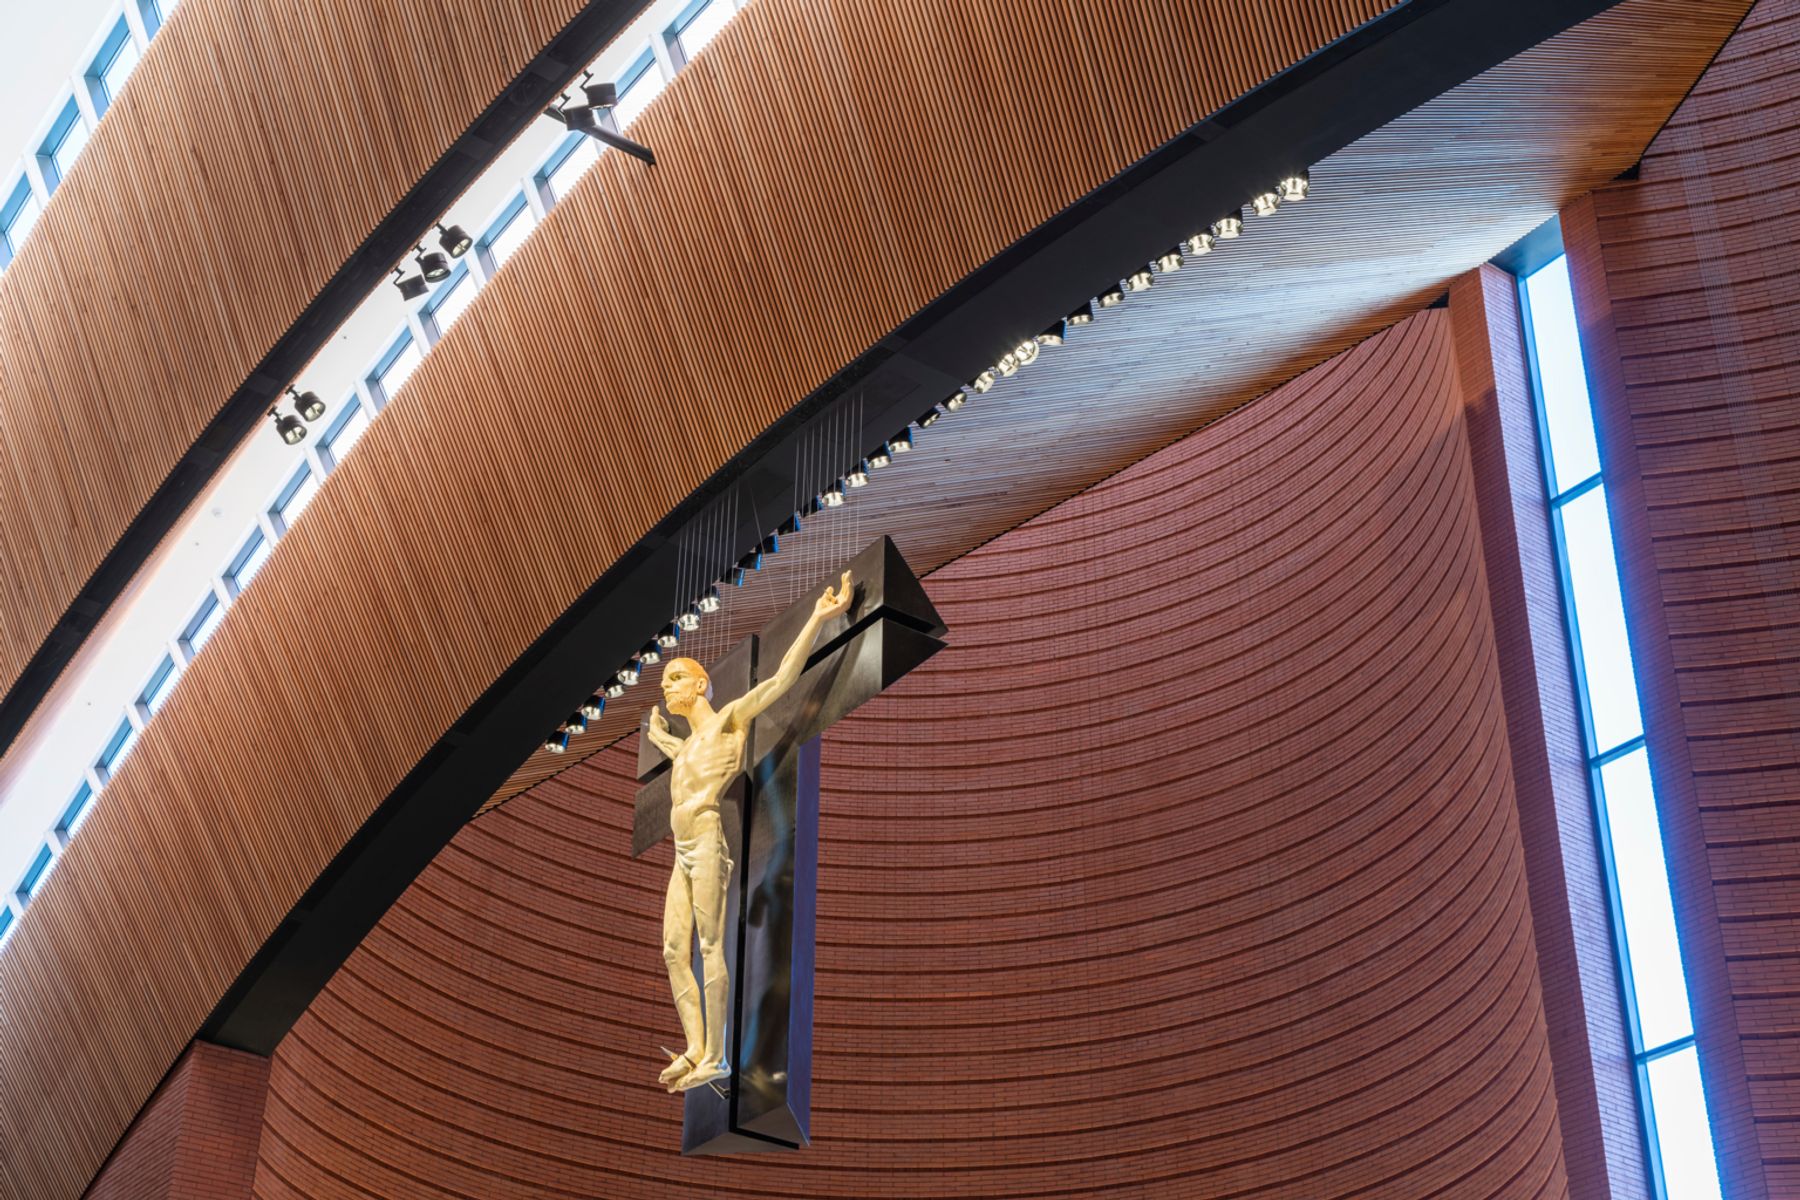 Santuario de Nuestra Señora Rosary de NamYang, Corea del Sur. Arquitecto: Mario Botta, Mendrisio. Diseño de iluminación: bitzro & partners, Seúl. Fotografía: Efraín Méndez Tabares, España